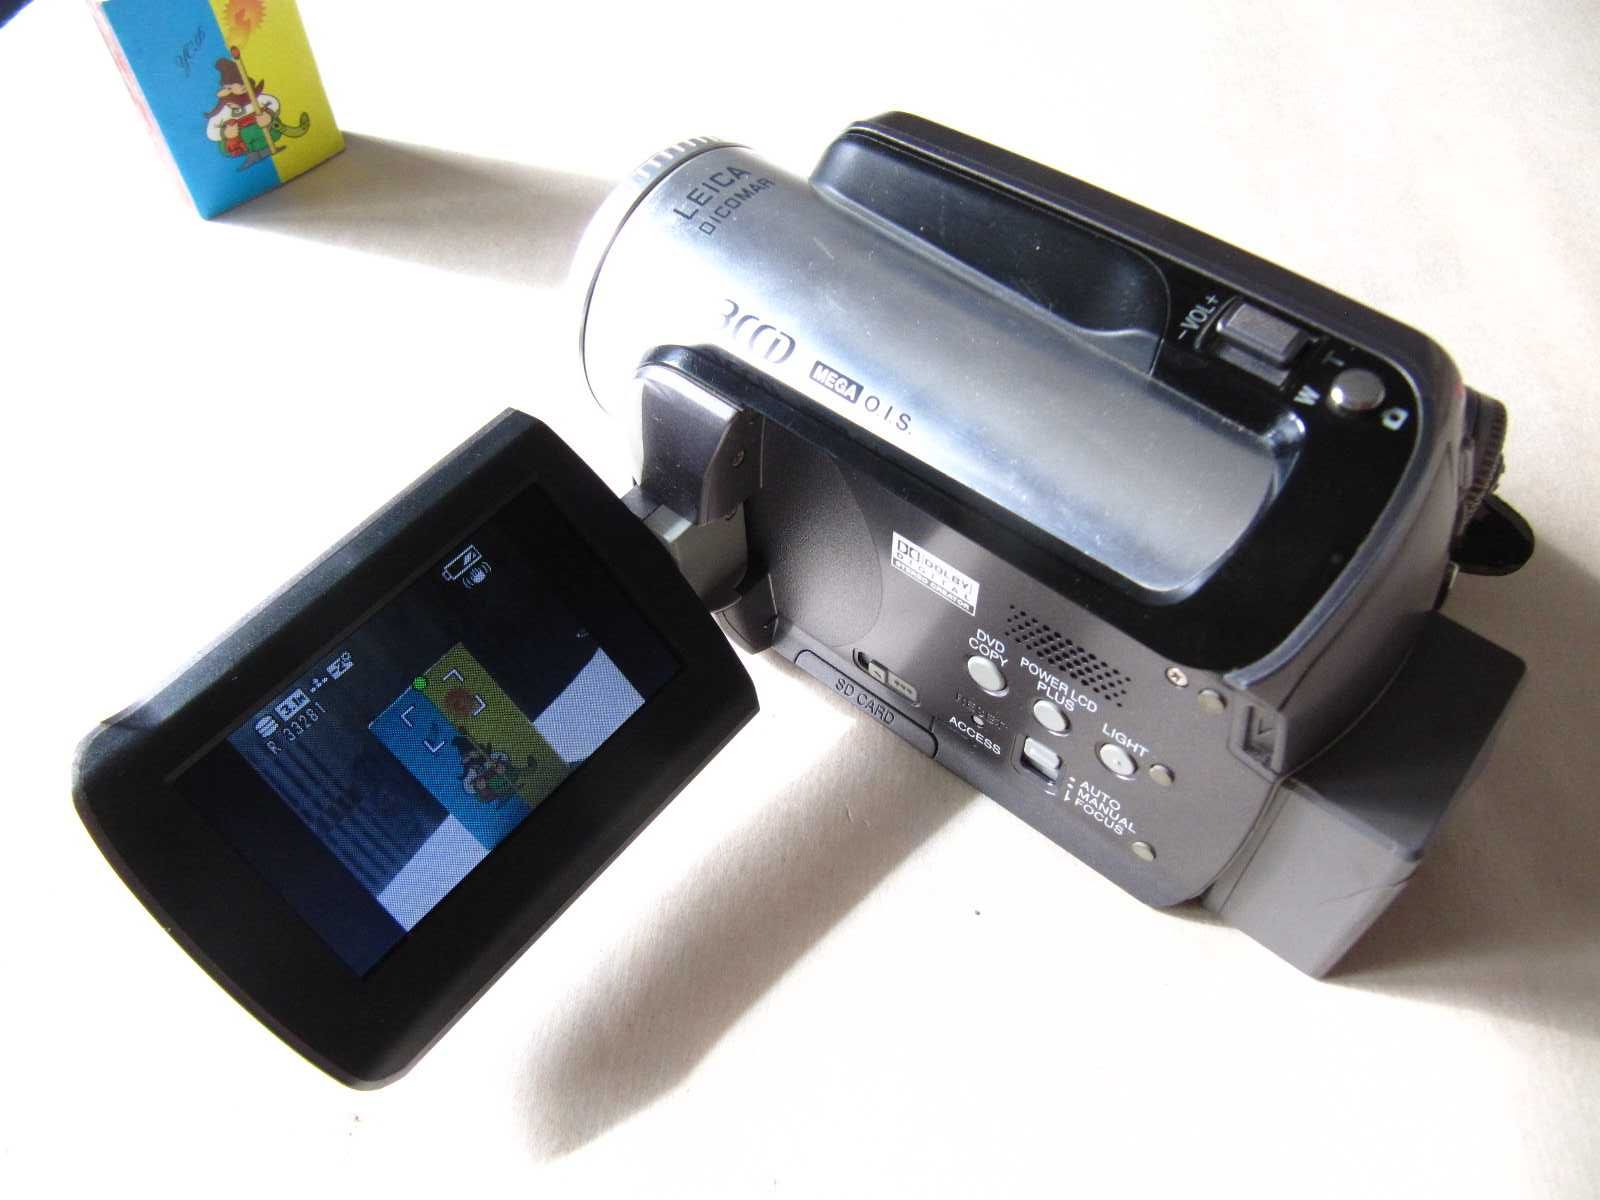 Відеокамера Panasonic SDR-H280EE-S HDD 30Gb робоча з комплектом